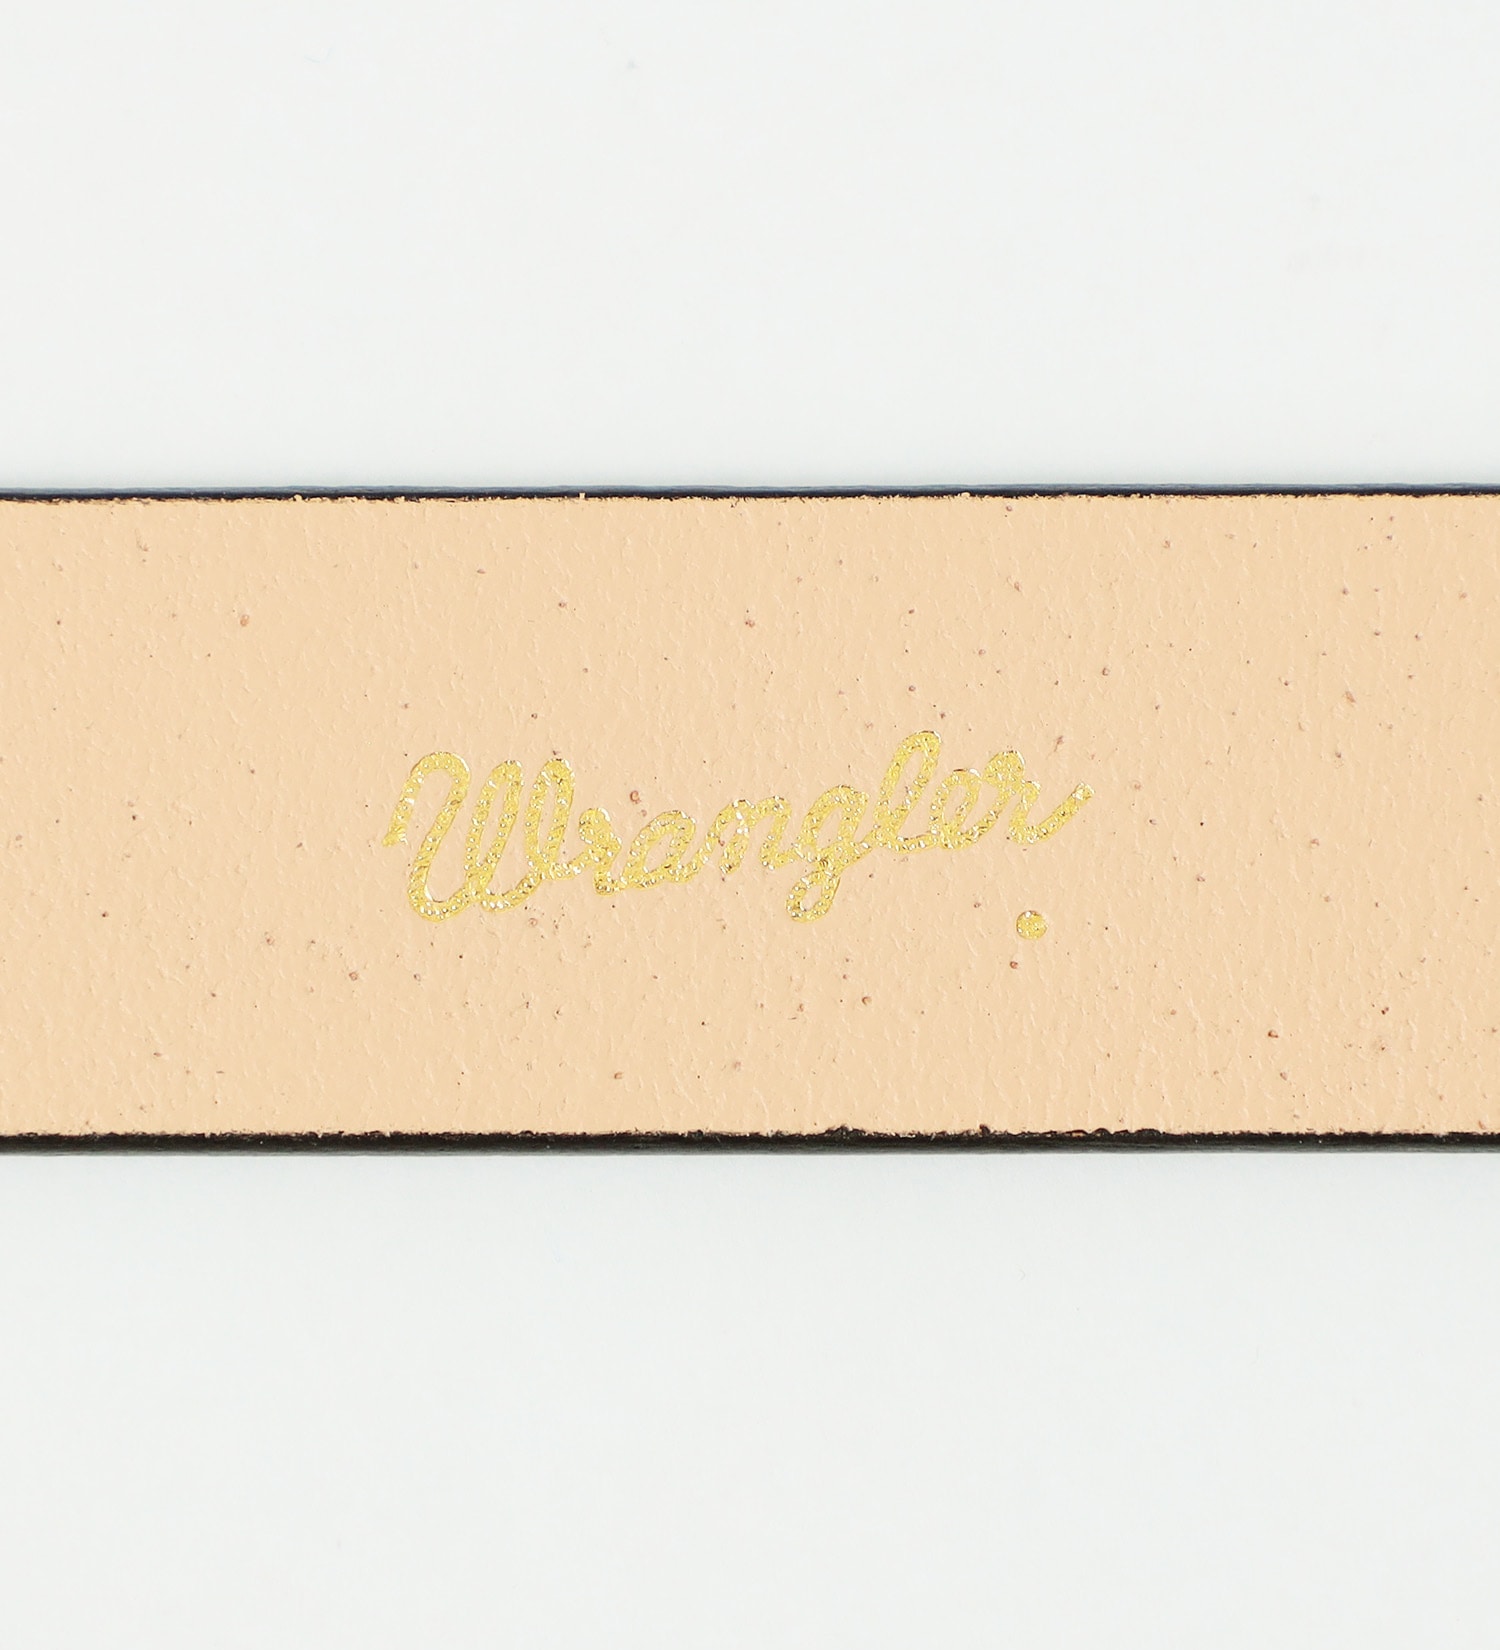 Wrangler(ラングラー)の牛革ベルト|ファッション雑貨/ベルト/メンズ|ワインレッド